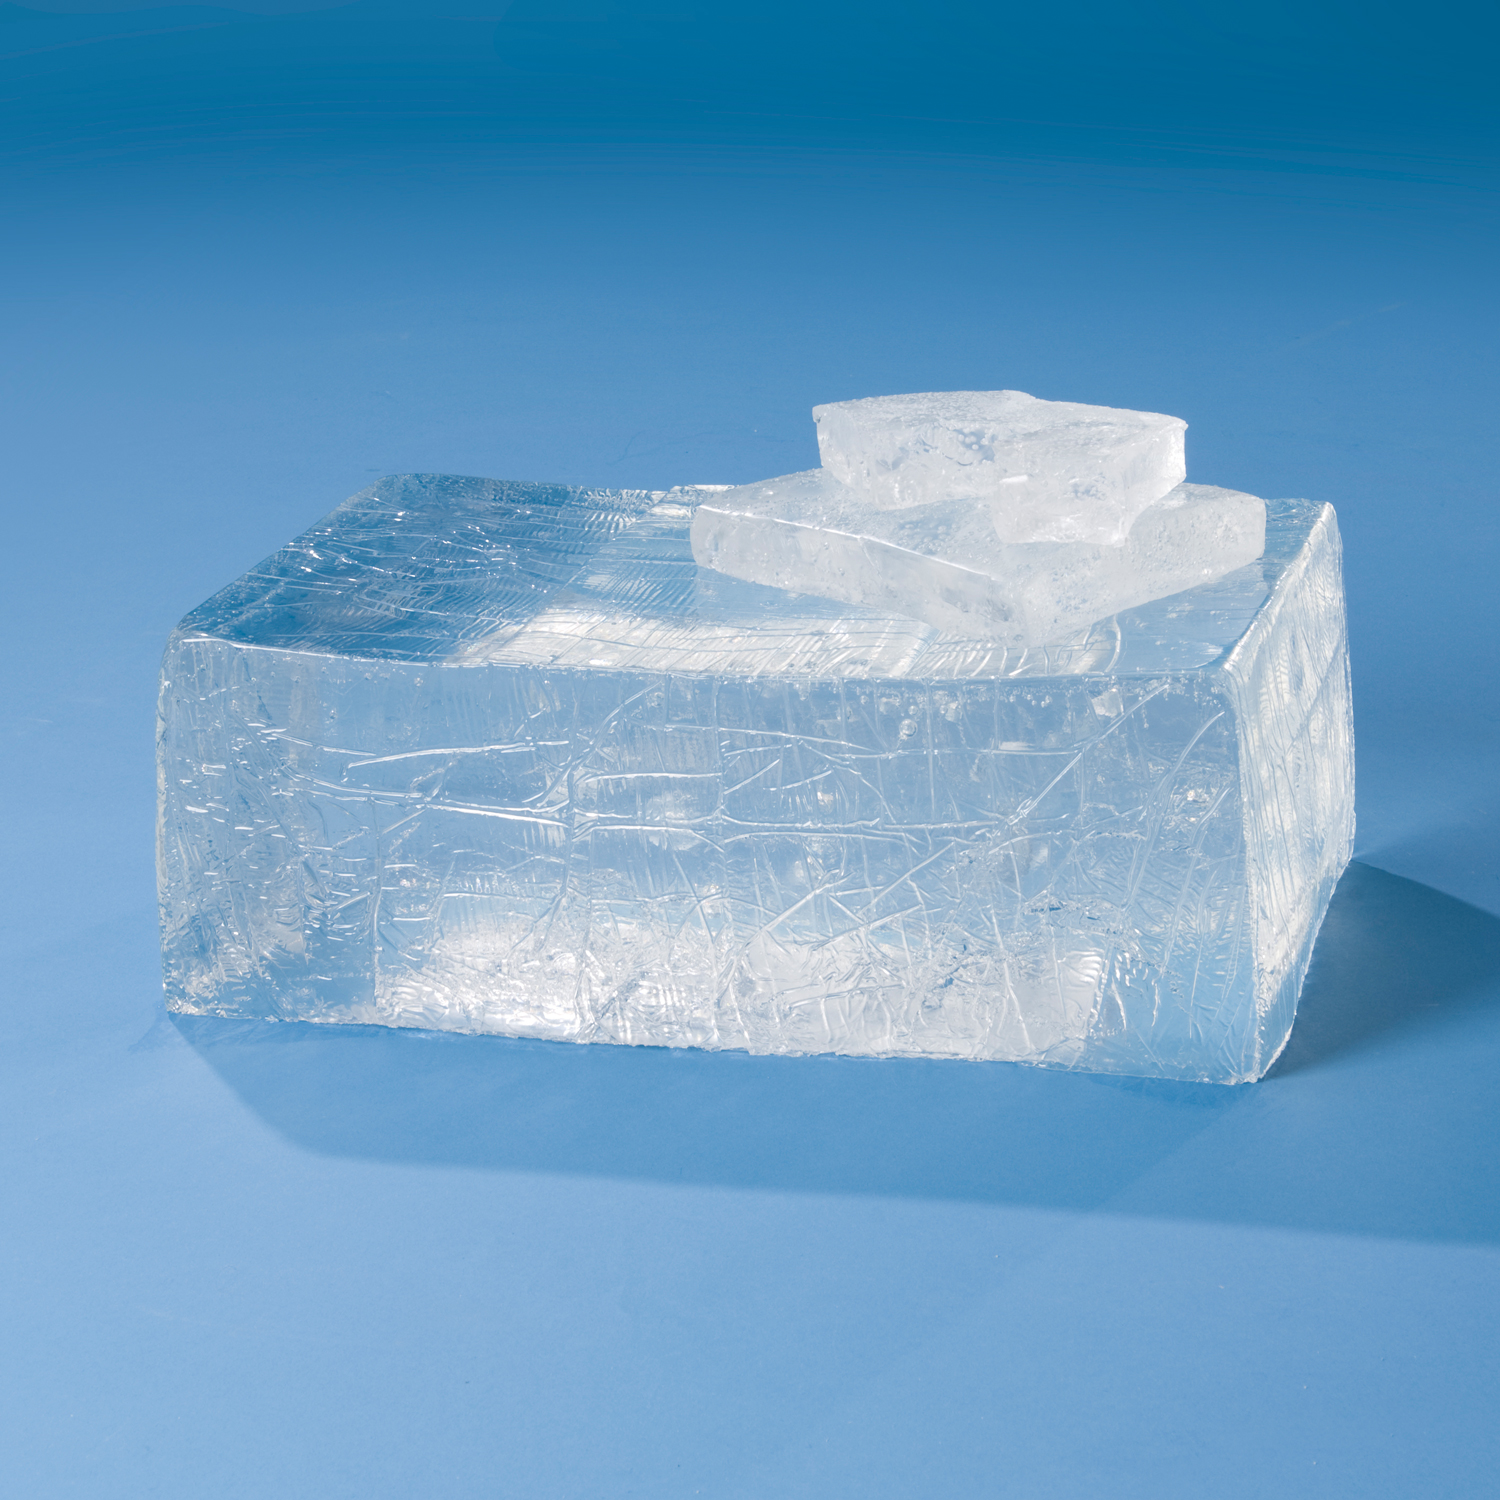 Eis- und Frostspray - Eisblumenspray